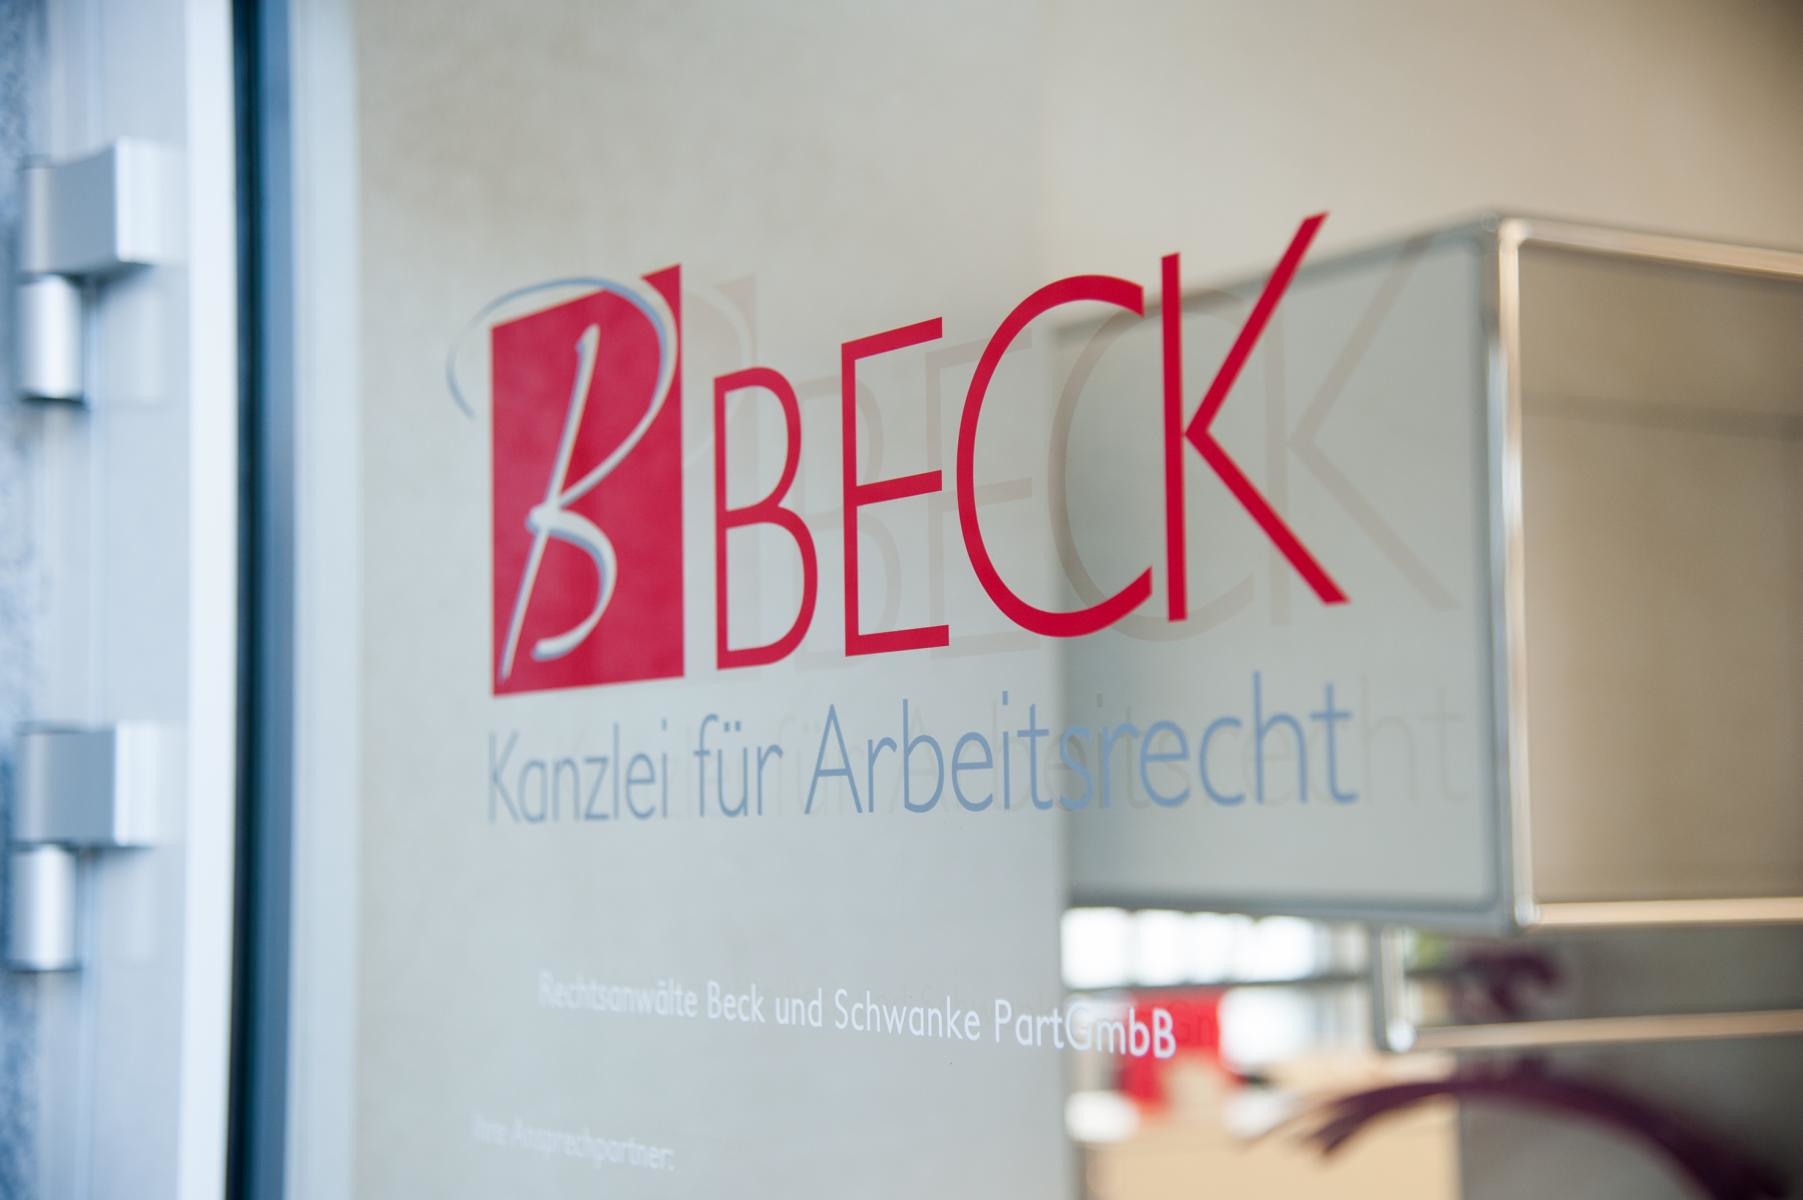 Kundenbild groß 3 BECK Kanzlei für Arbeitsrecht - Rechtsanwälte Beck und Schwanke PartGmbB